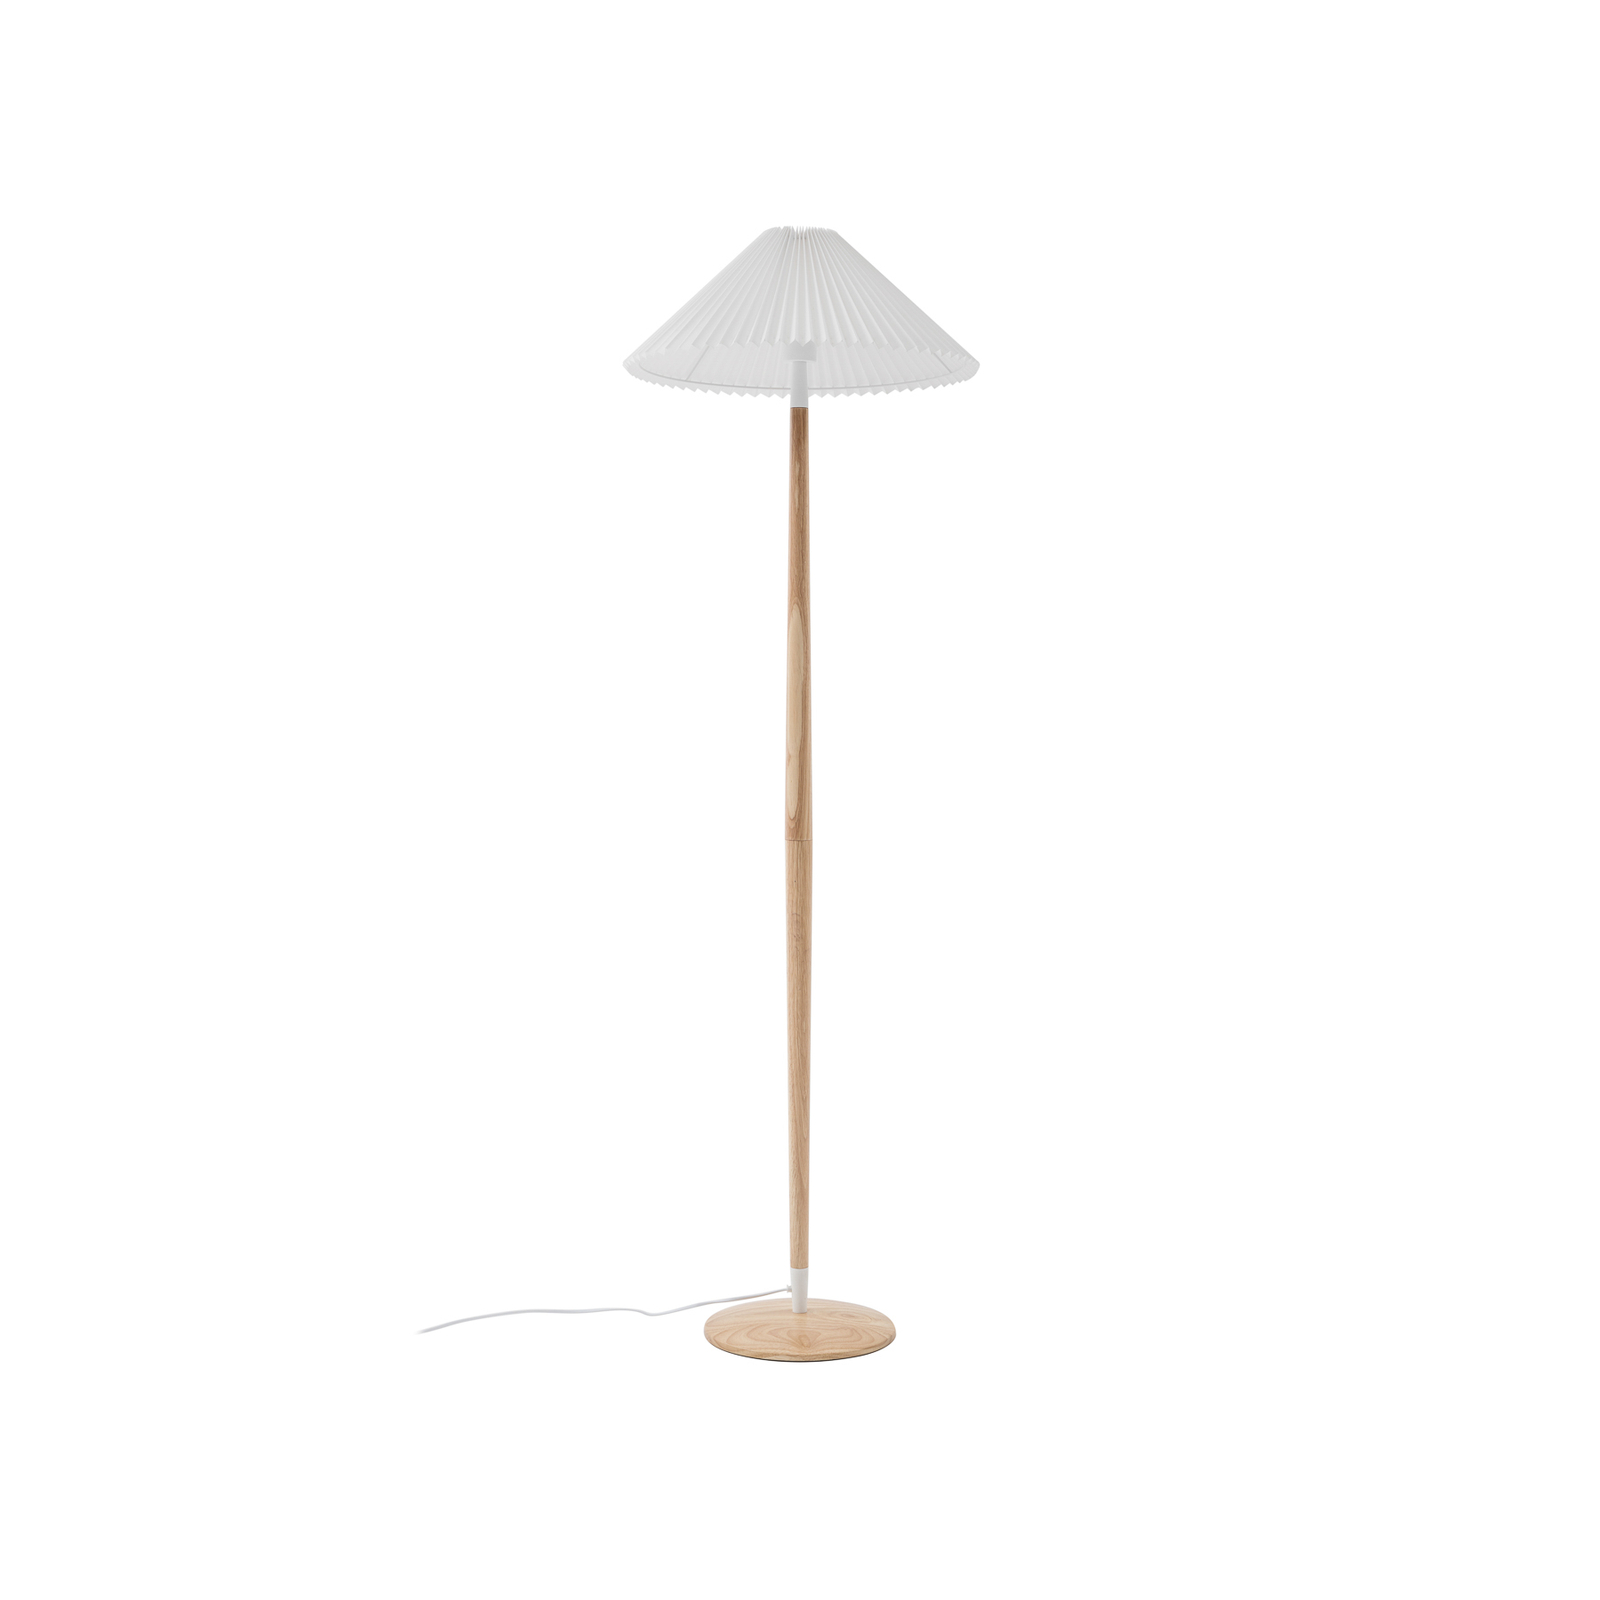 Lucande lampe sur pied Ellorin, blanc, bois, Ø 47,5 cm, E27